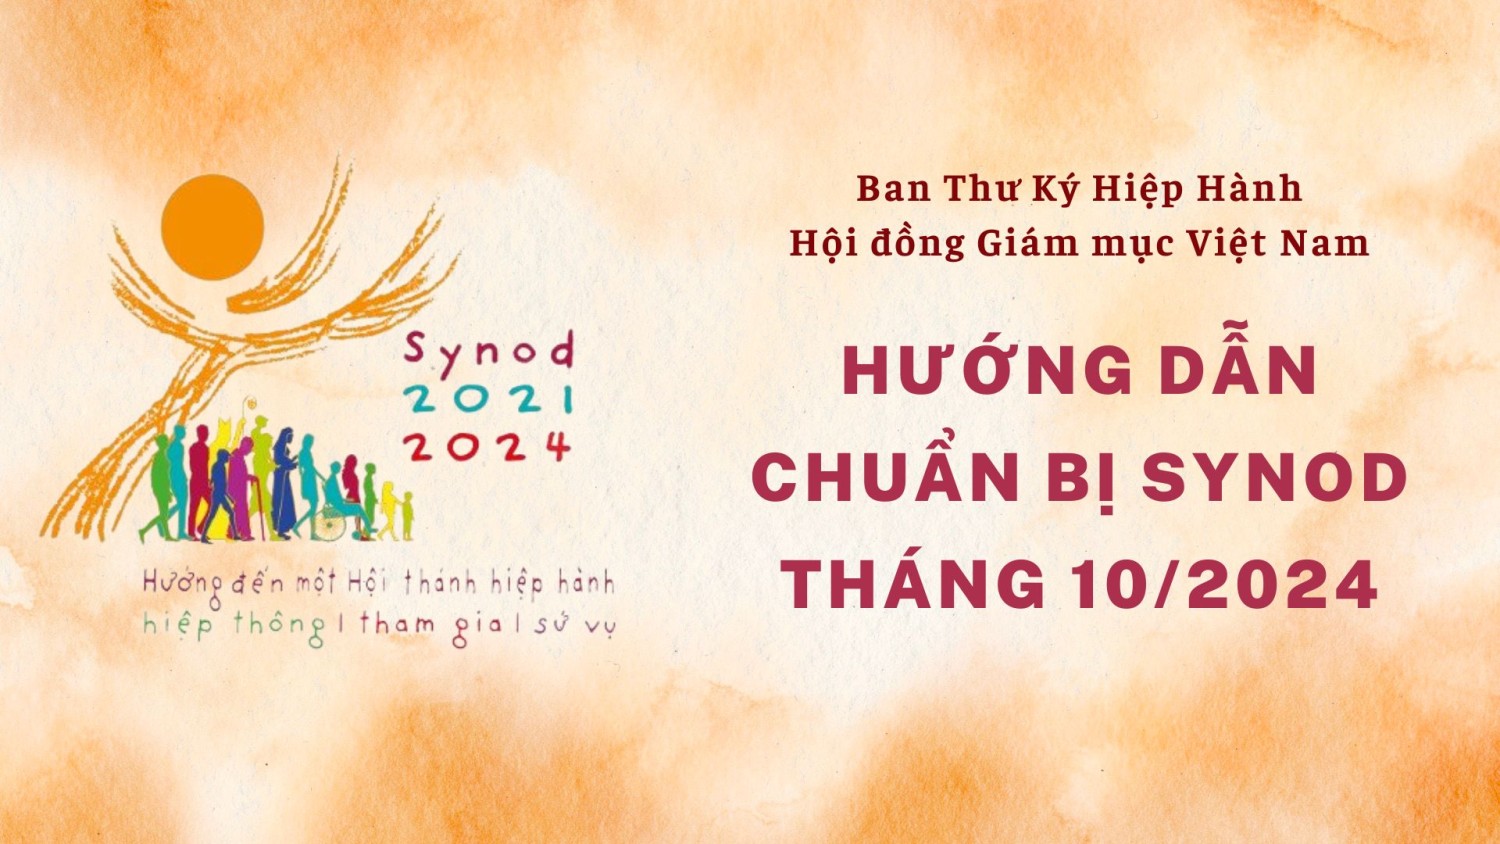 ban thu ky hiep hanh hdgmvn huong dan chuan bi synod thang 10 2024